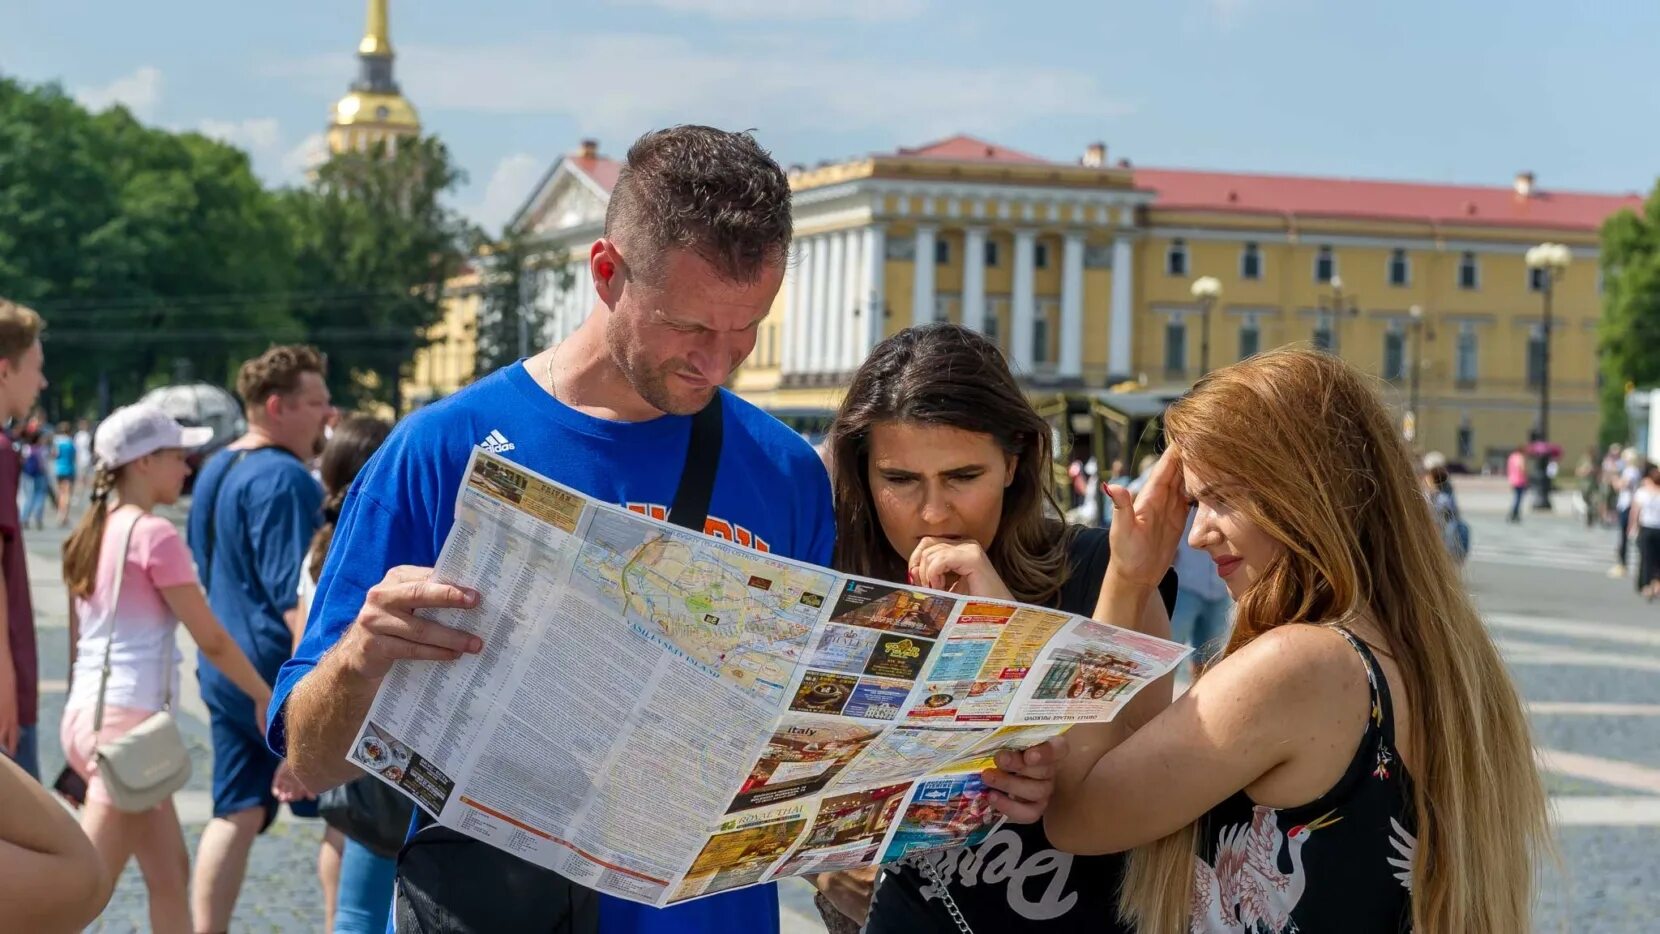 Тури́сты в Санкт-Петербу́рге. Туристы в Санкт-Петербурге. Иностранцы на улице. Культурно-познавательный туризм в Санкт-Петербурге.